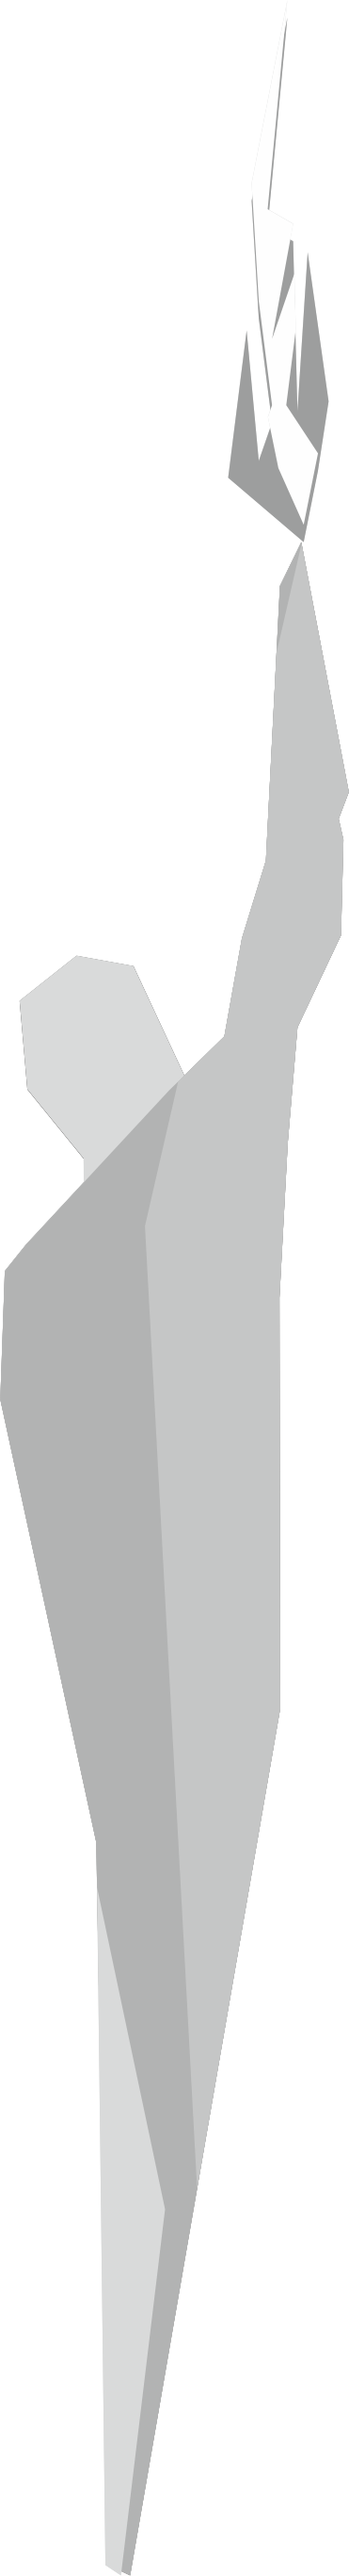 Śląski Prometeusz - Figura trzymająca pochodnię